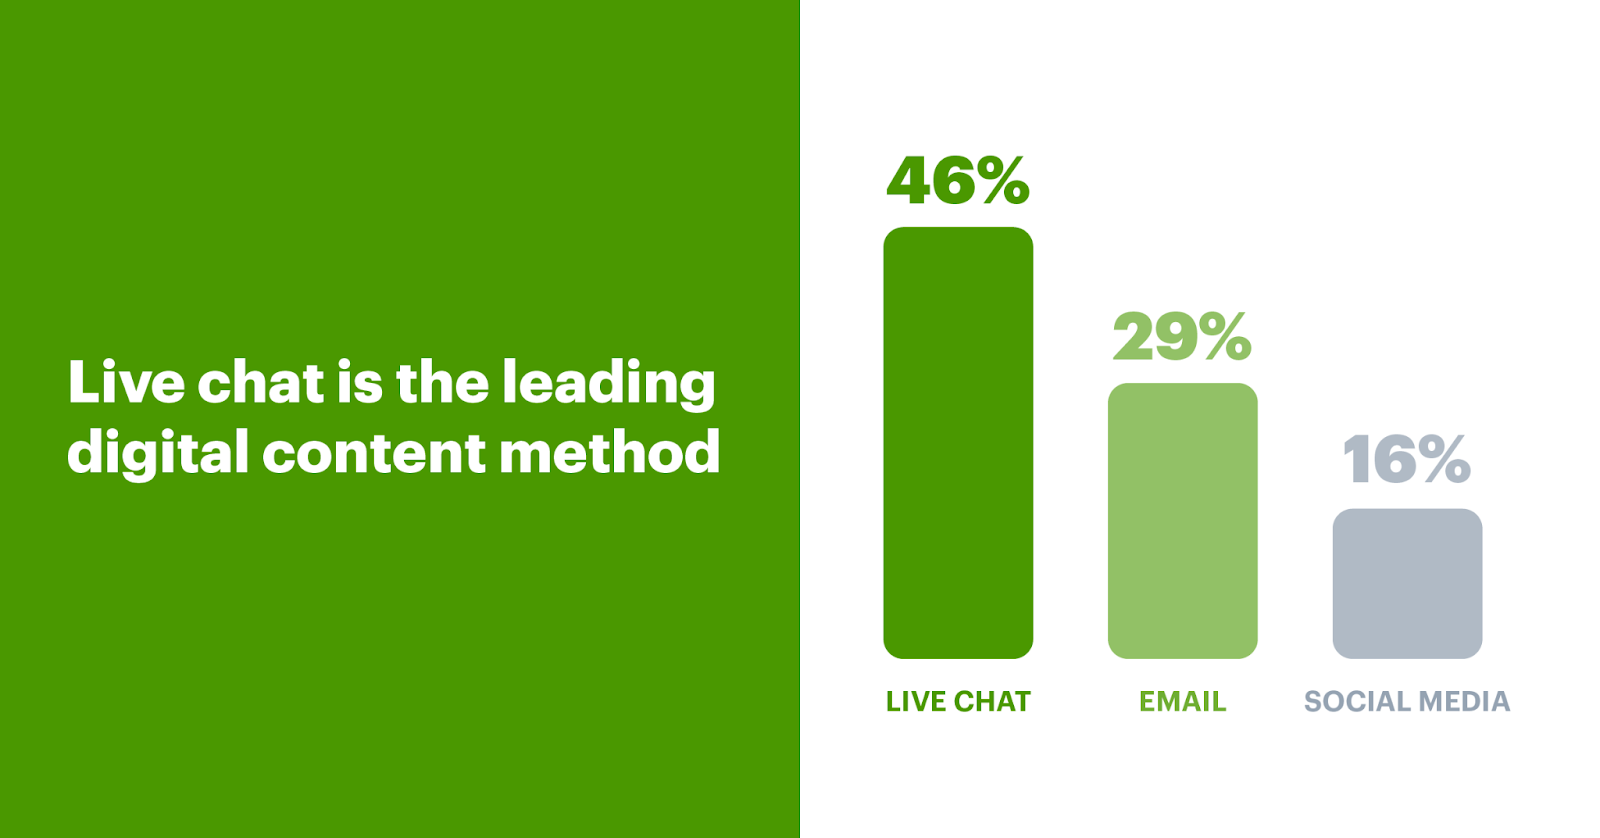 El chat en vivo se ha convertido en el método de contacto digital líder para los clientes en línea, ya que un asombroso 46 % de los clientes prefieren el chat en vivo en comparación con solo el 29 % para el correo electrónico y el 16 % para las redes sociales.